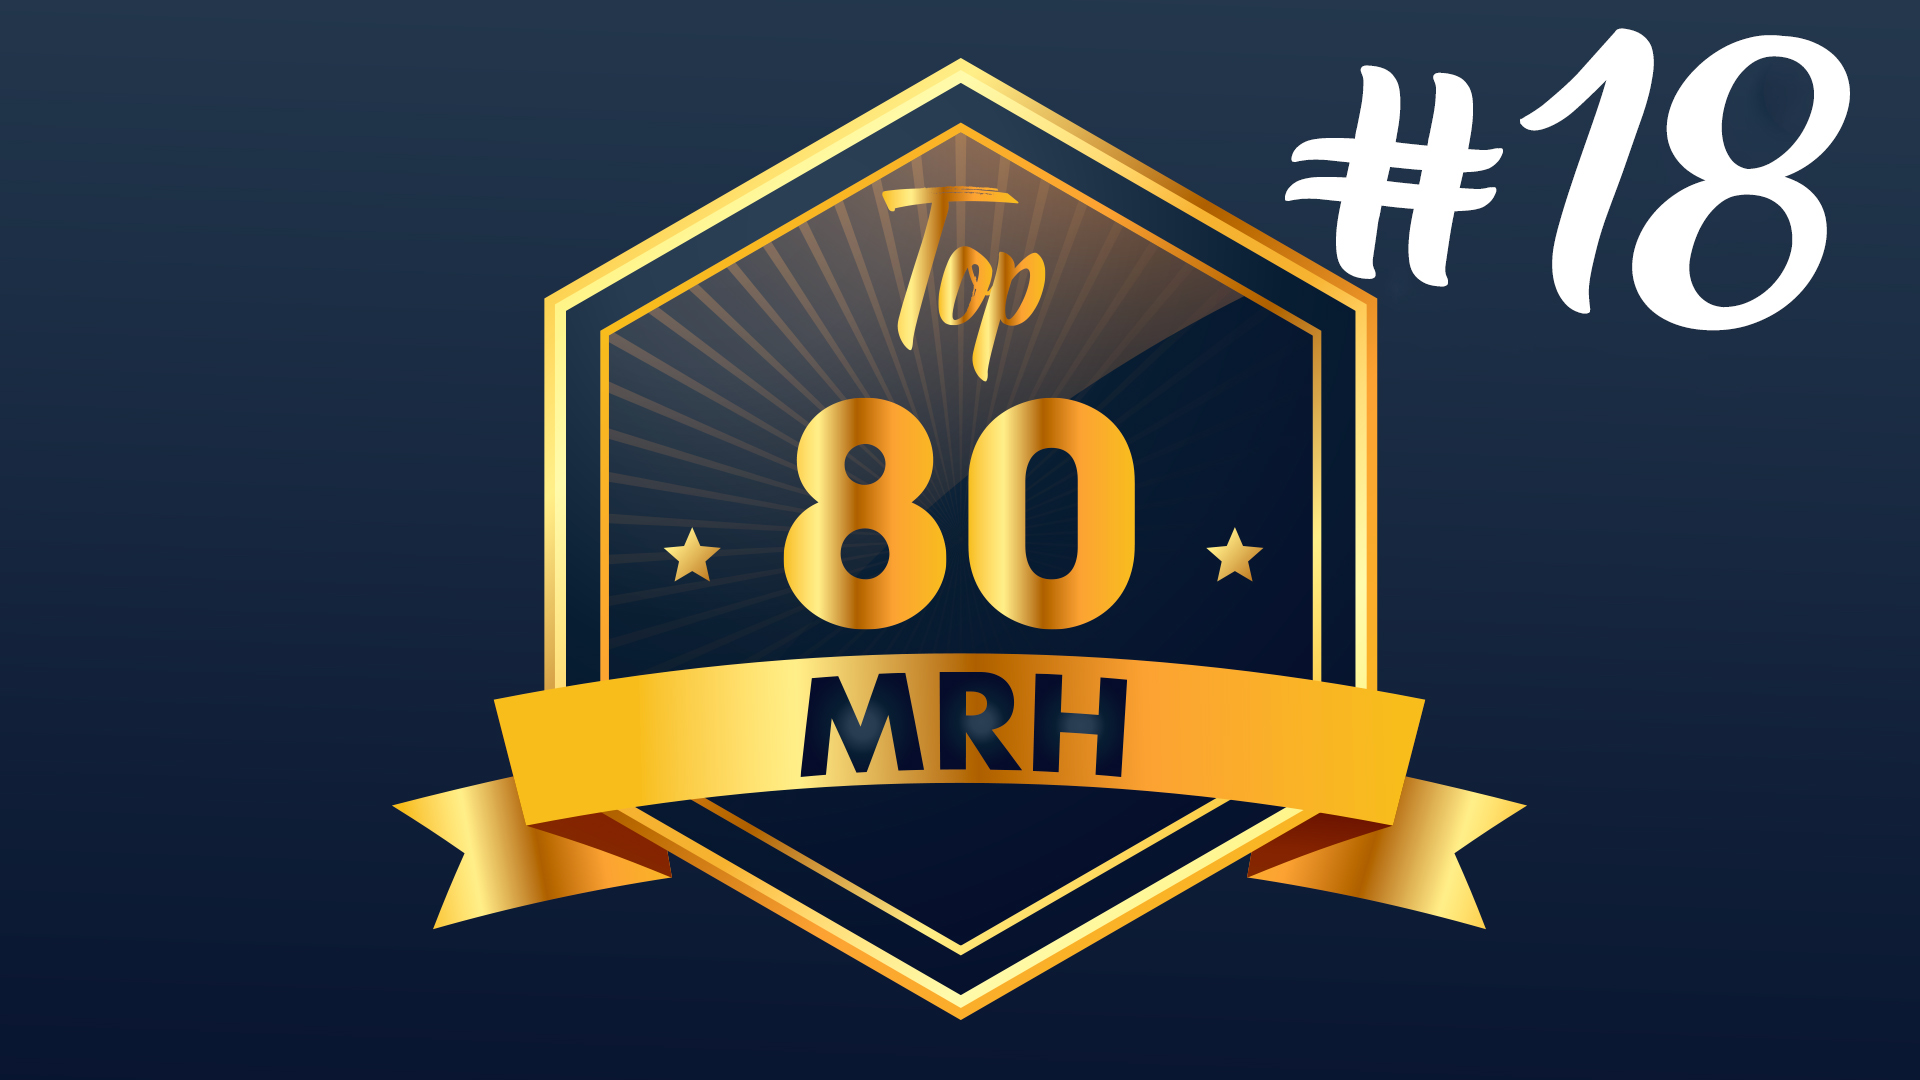 Top 80 MRH - Qui fera partie du 18e classement Top MRH